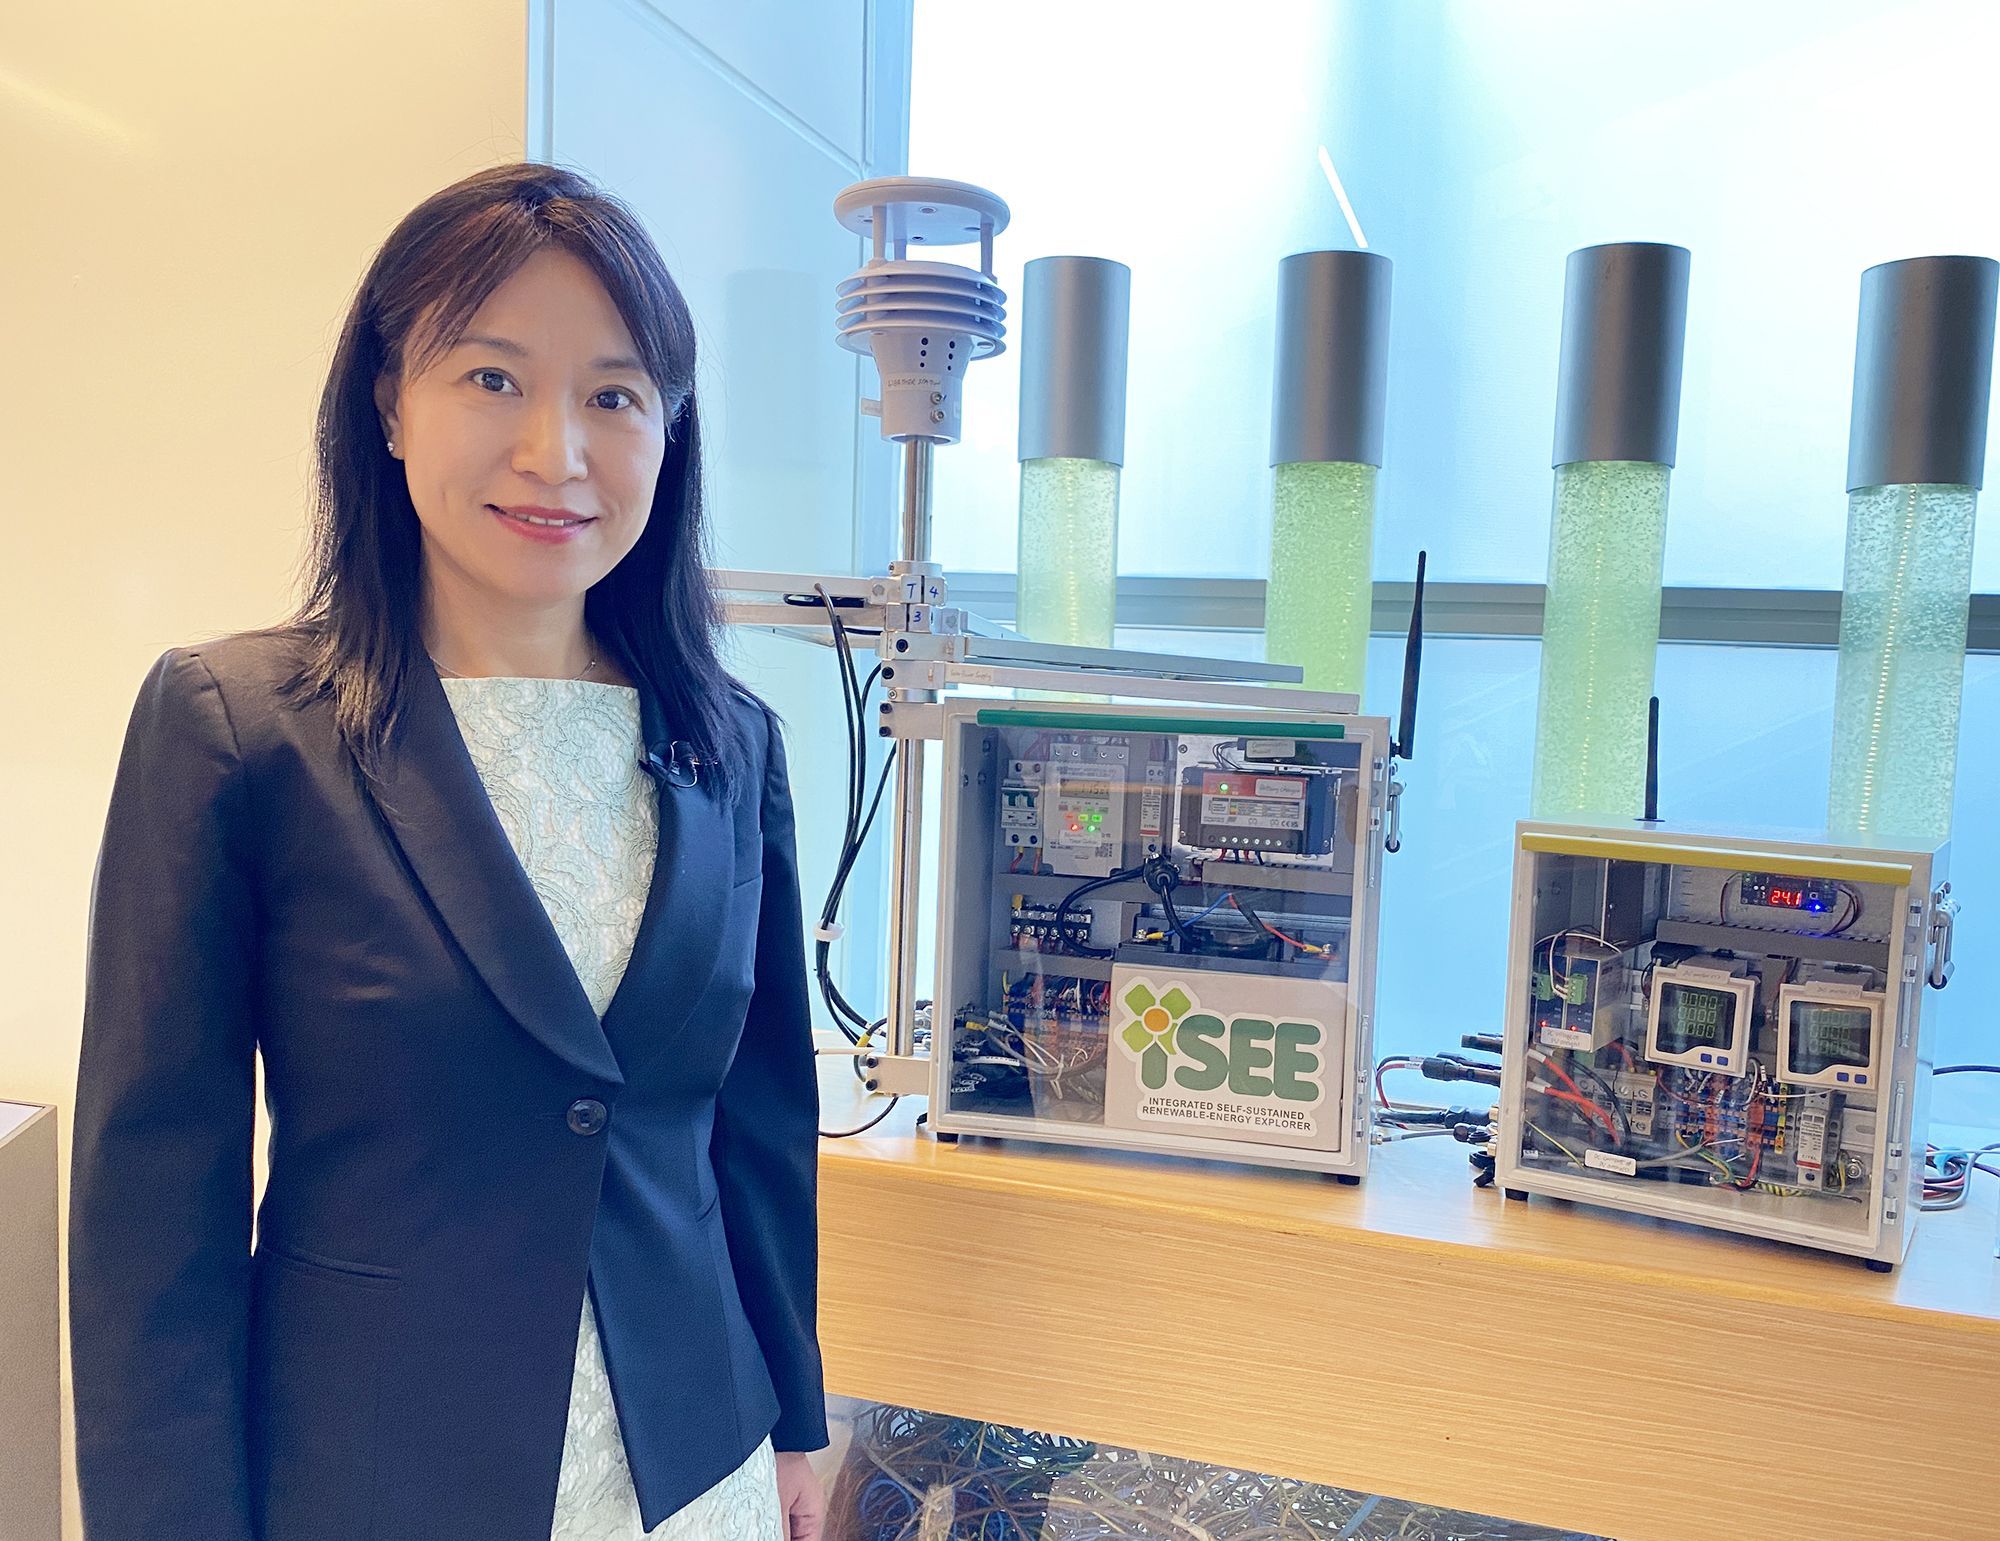 机电署高级工程师（能源效益）张敏婕表示，可再生能源探索者iSEE能收集现场实时气象资料数据，有助准确评估可再生能源的产电潜力和回报。